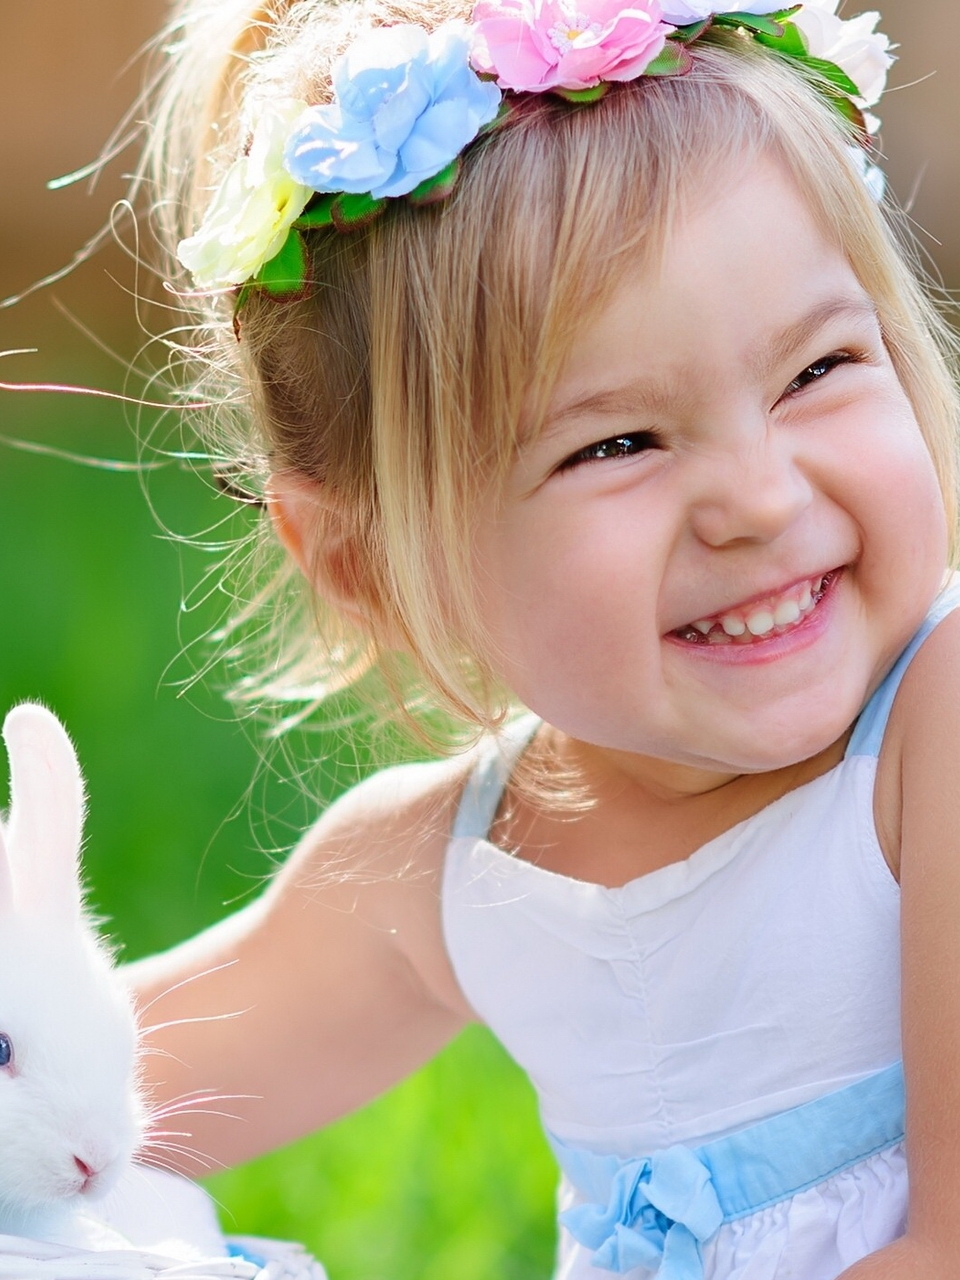 Картинка: Девочка, кролик, радость, улыбка, настроениие